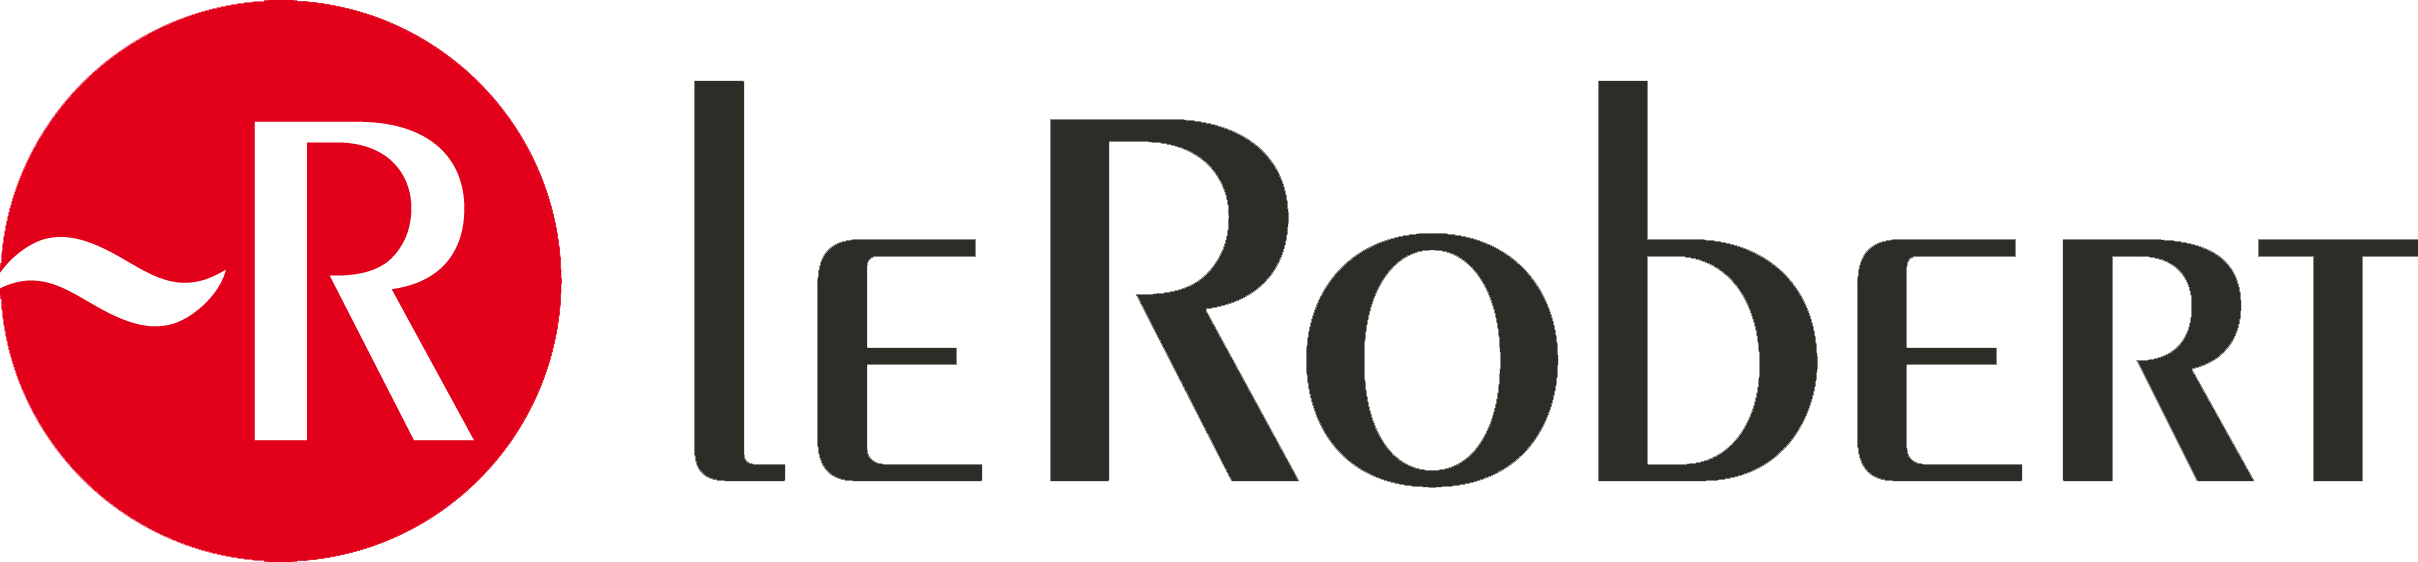 Logo Le Robert | Le Robert for professionals